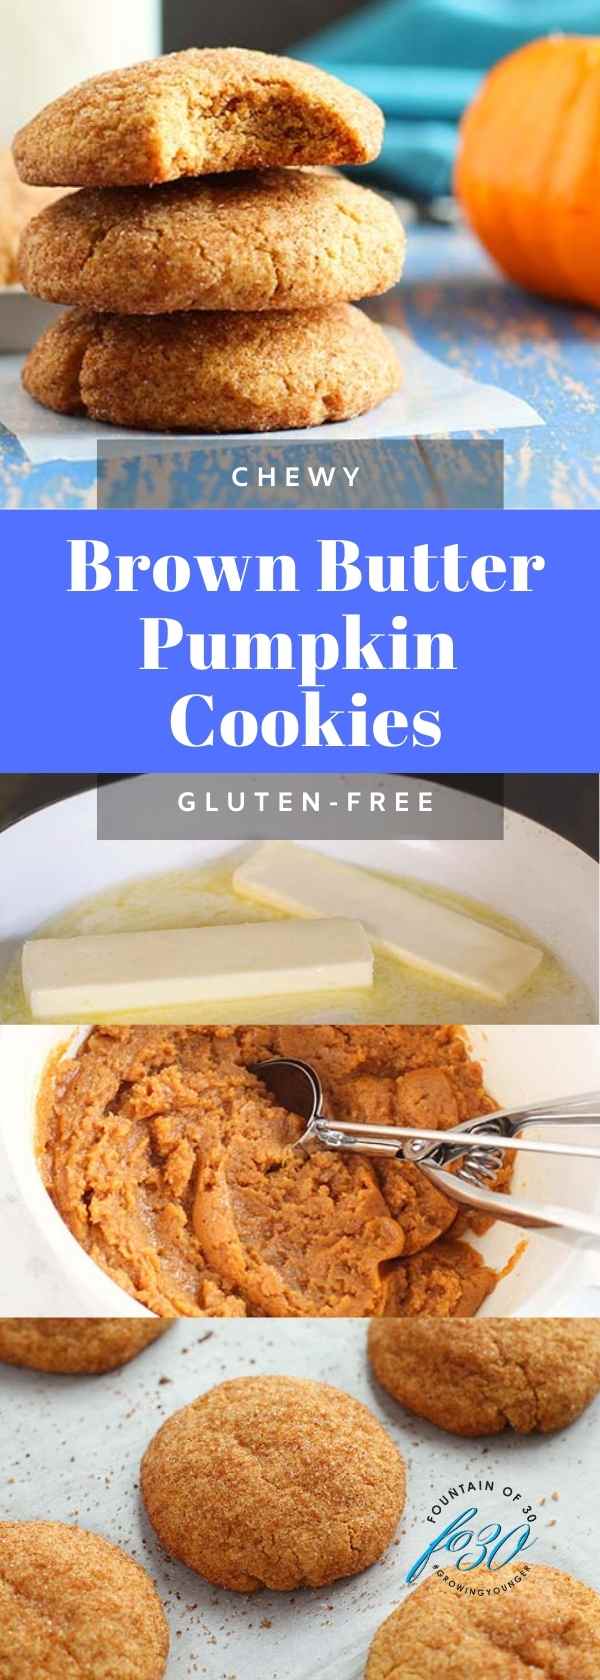 brown butter pumpkin cookies fountainof30